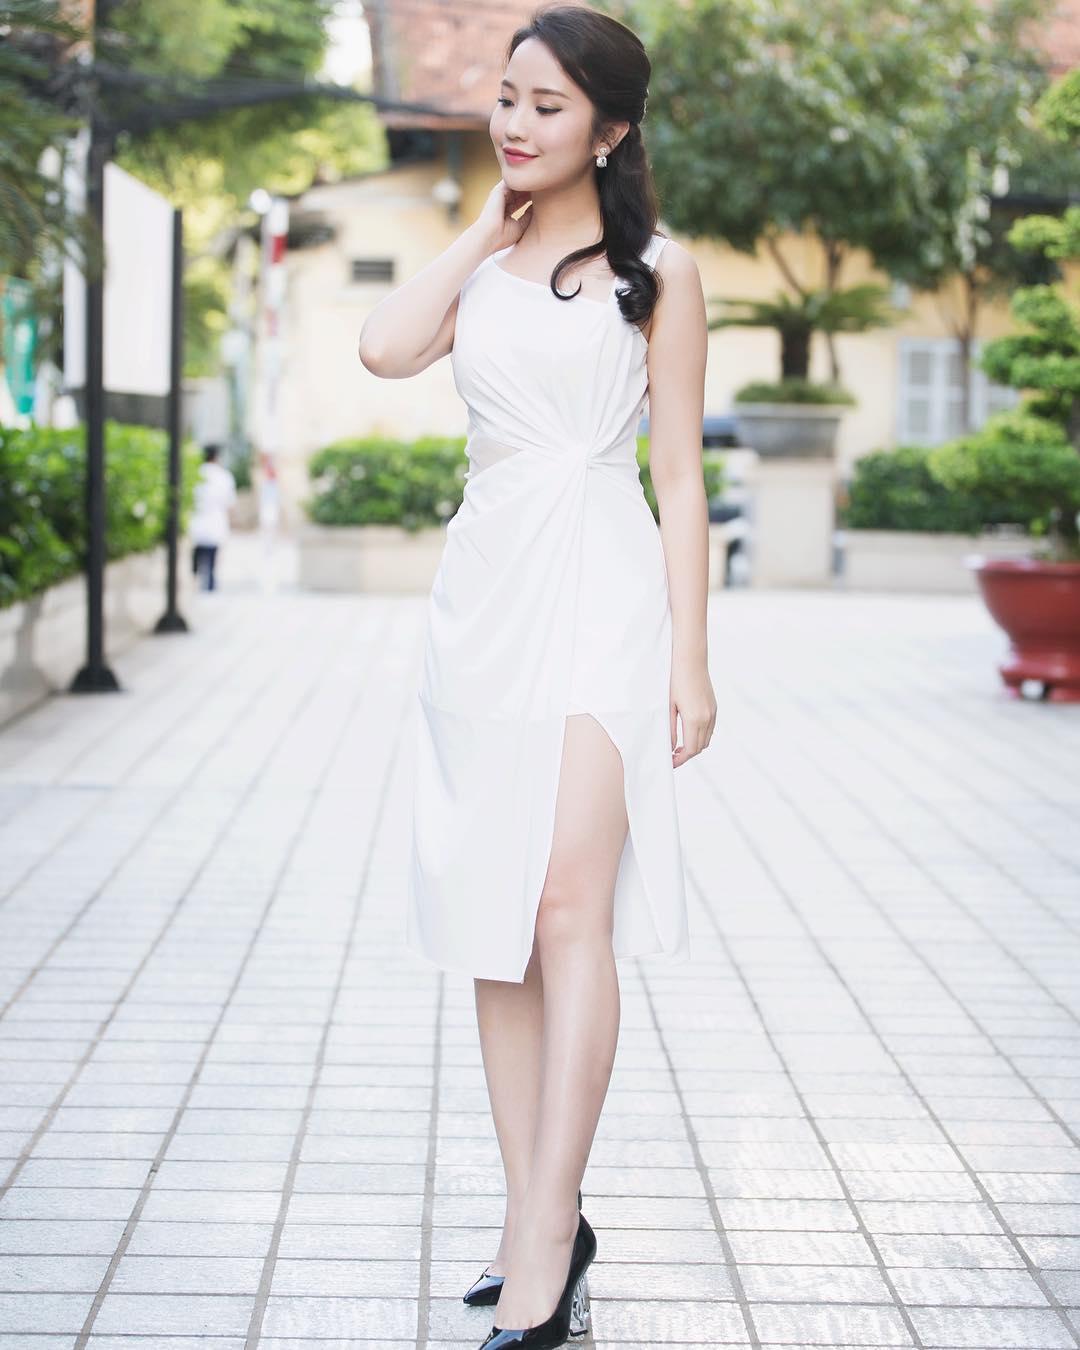 Hé lộ bằng chứng Phan Thành đang hẹn hò với top 10 Hoa hậu Phụ nữ Việt Nam qua ảnh 2012-5